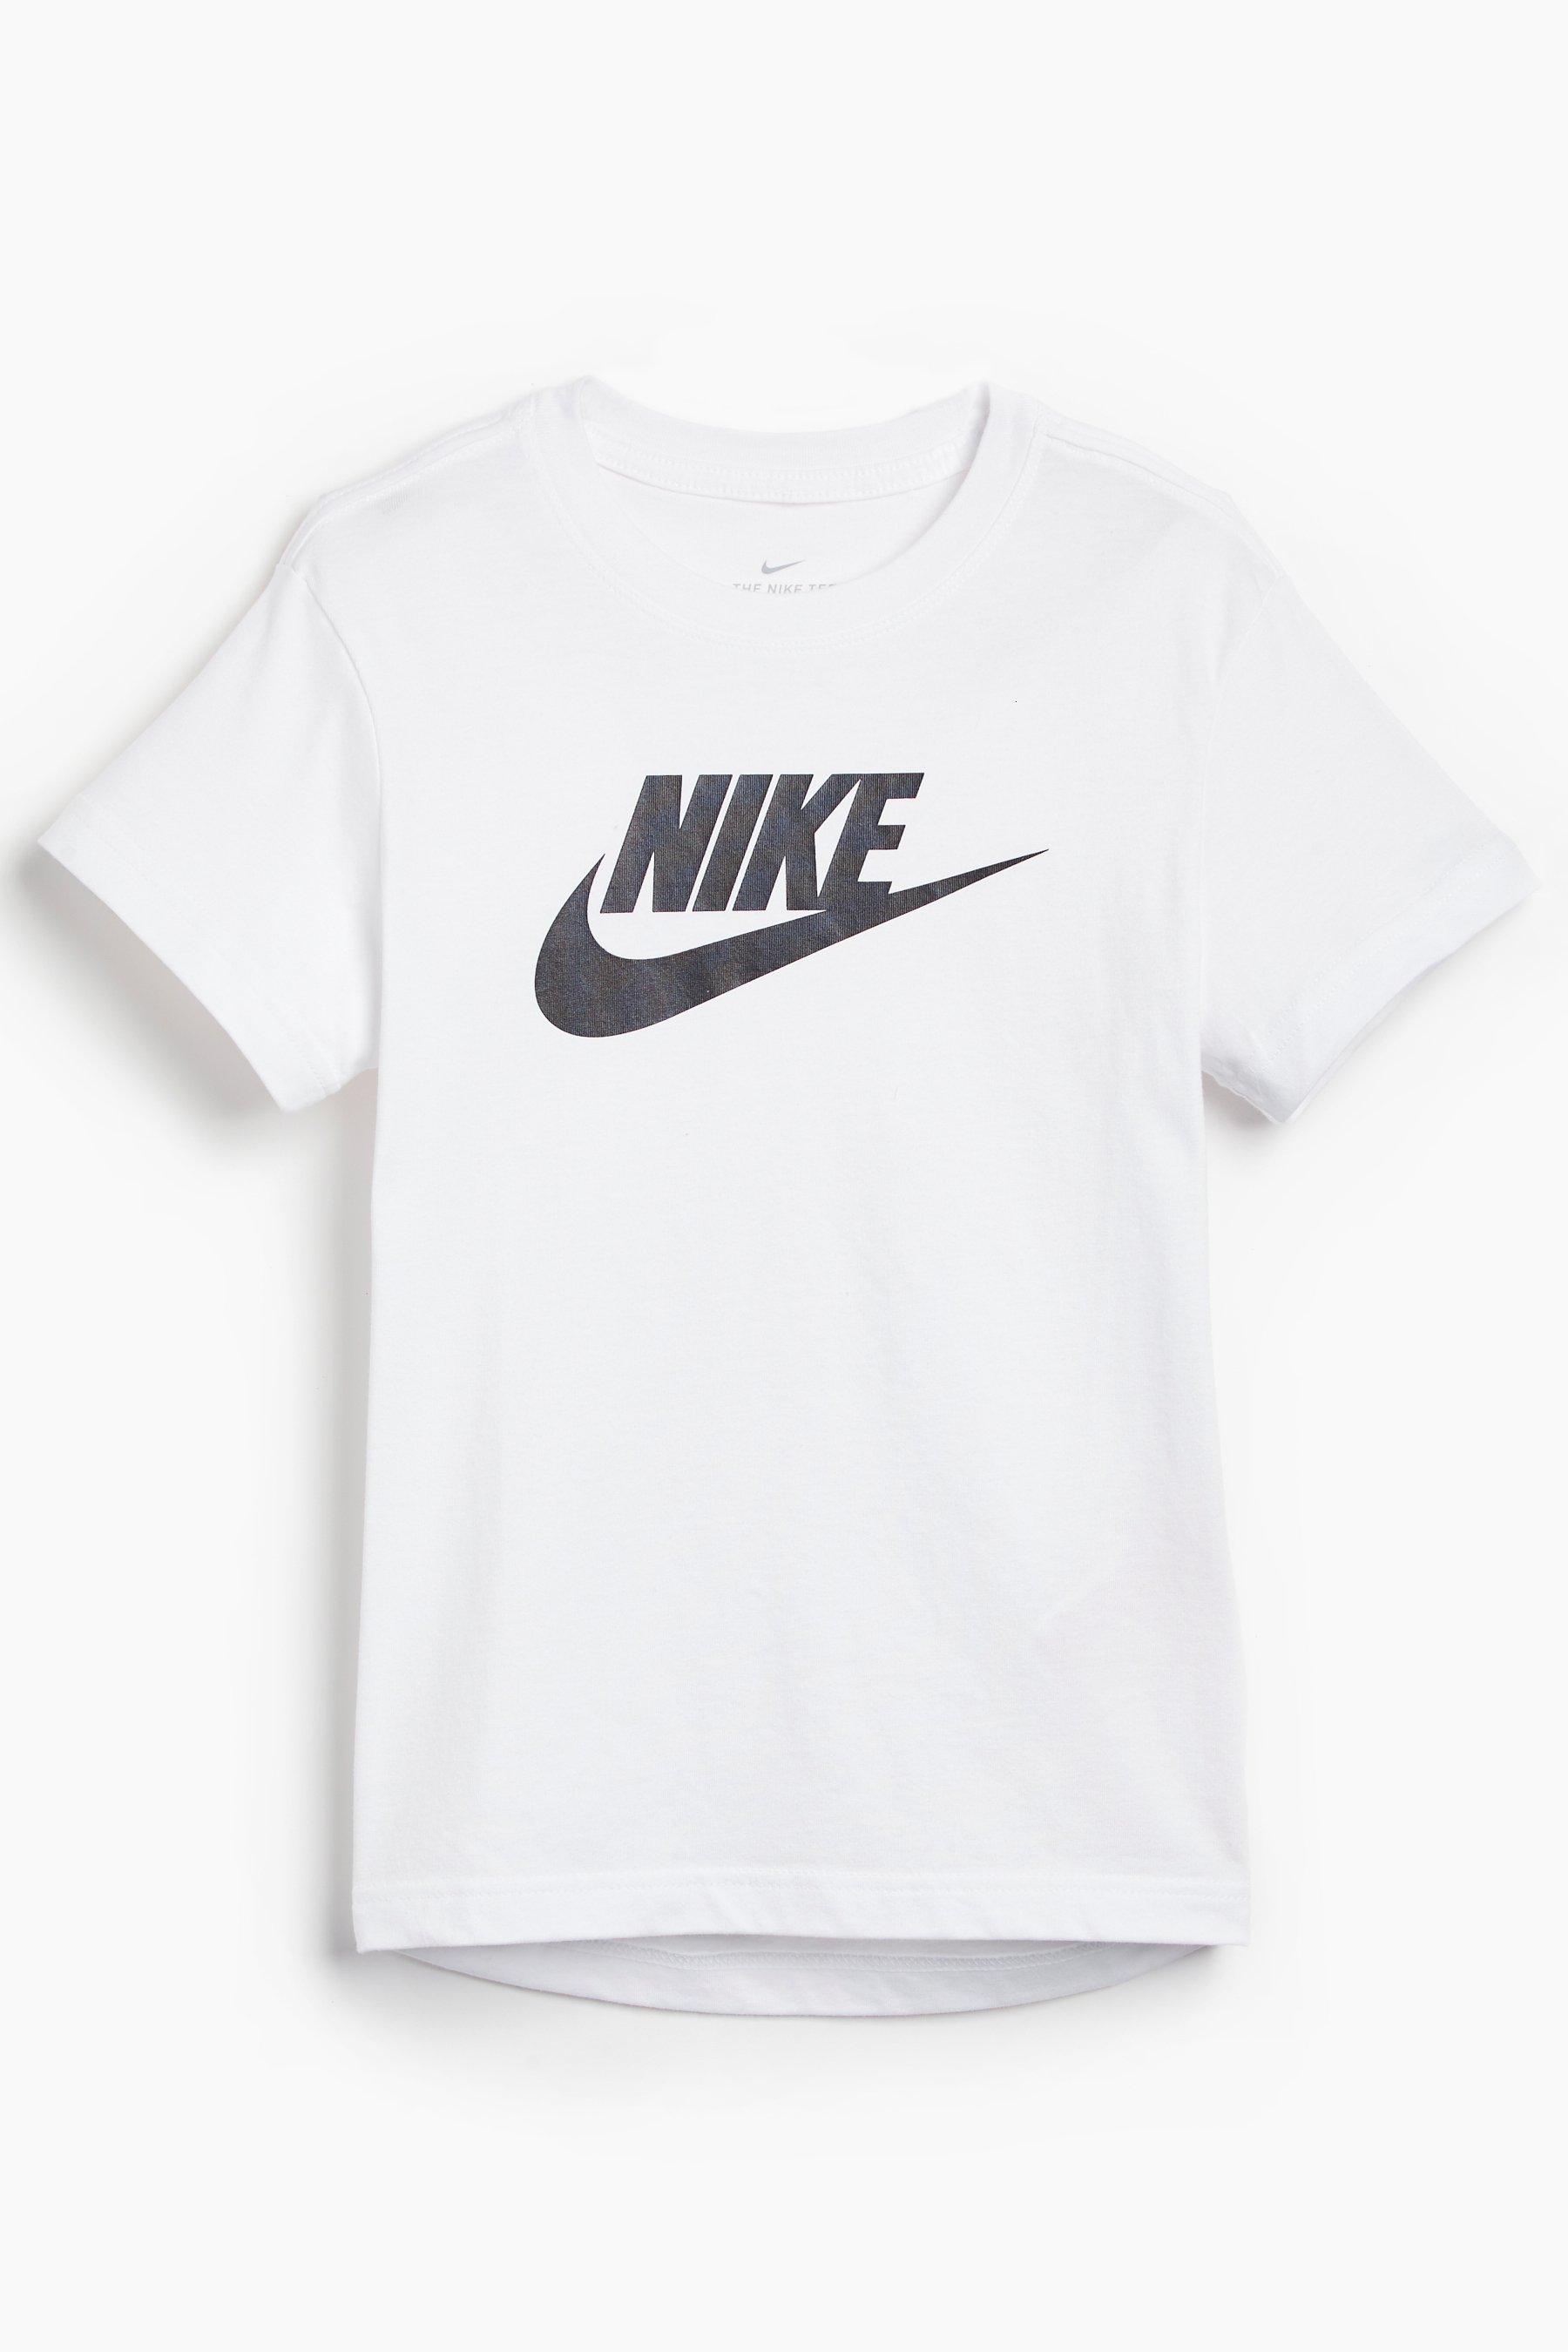 Older Girls Nike White T-Shirt | Studio